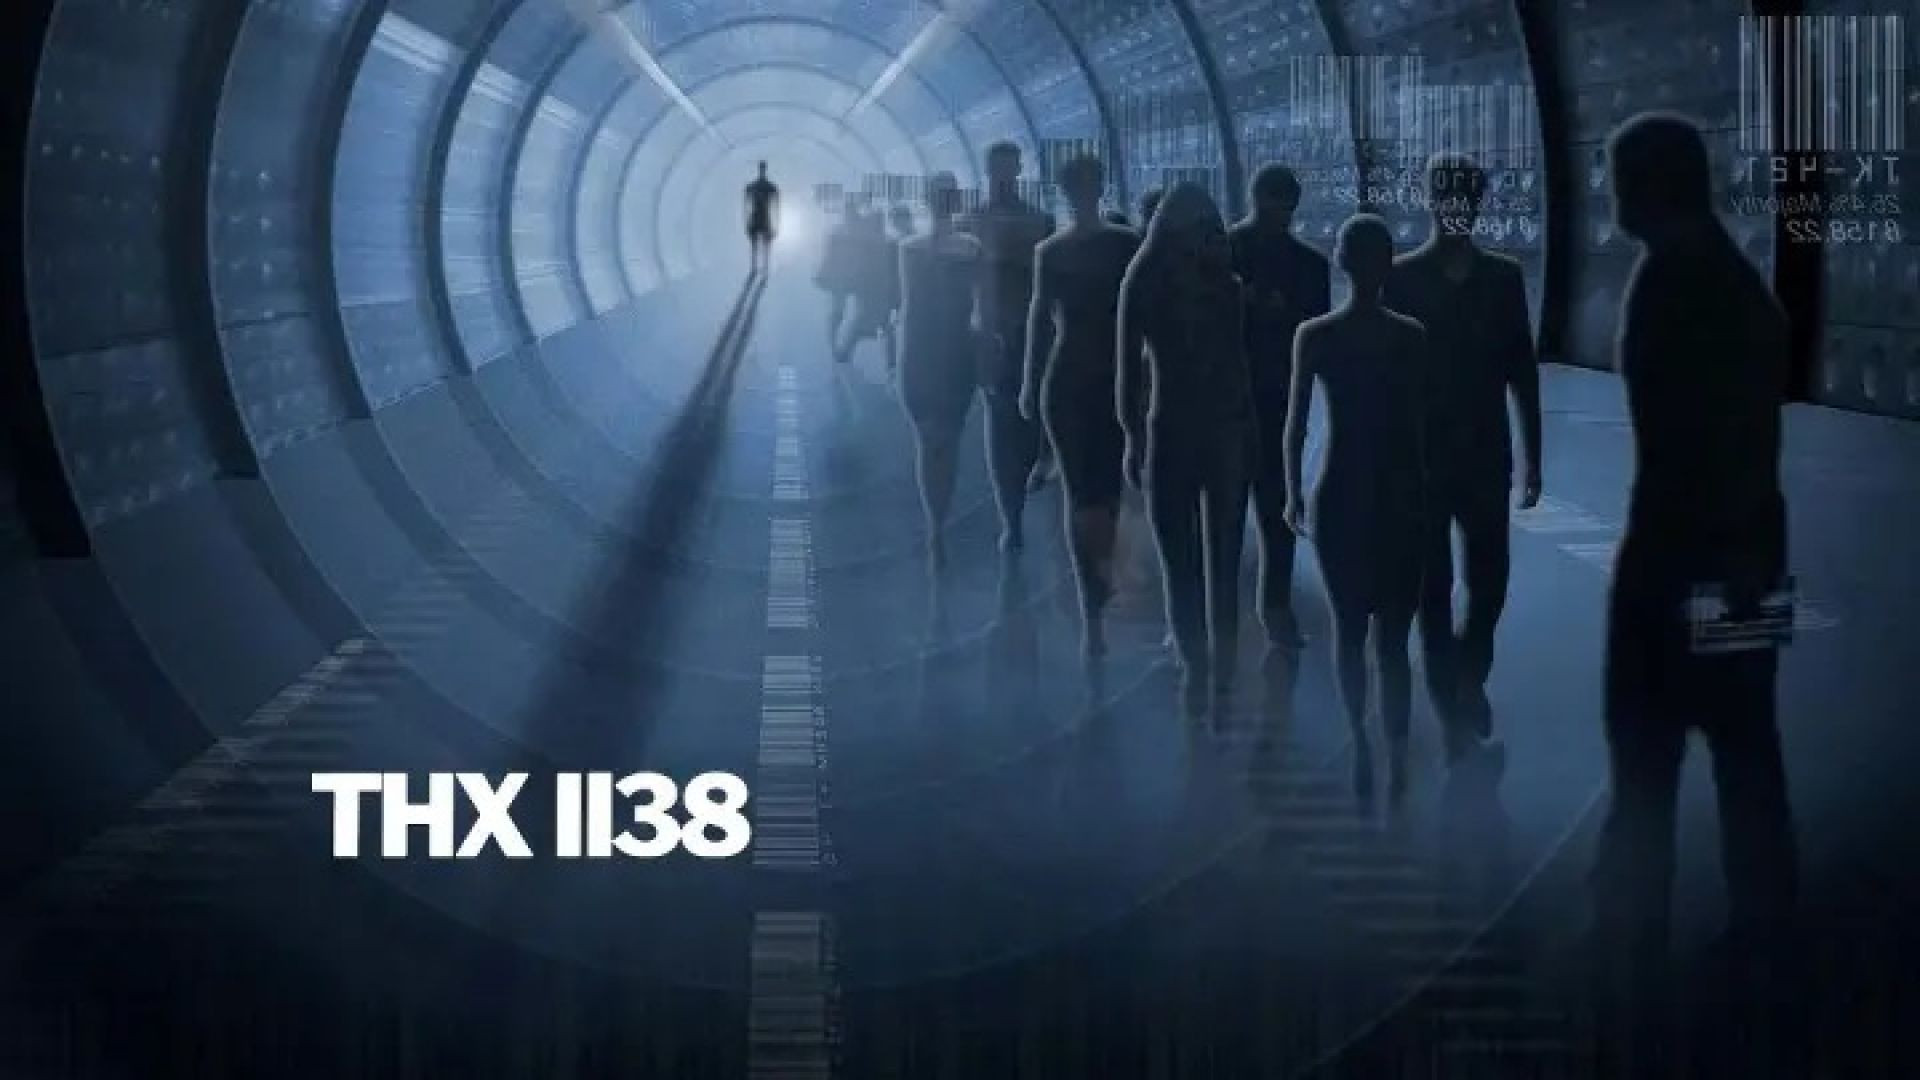 THX 1138 (1971) cas. + LINK